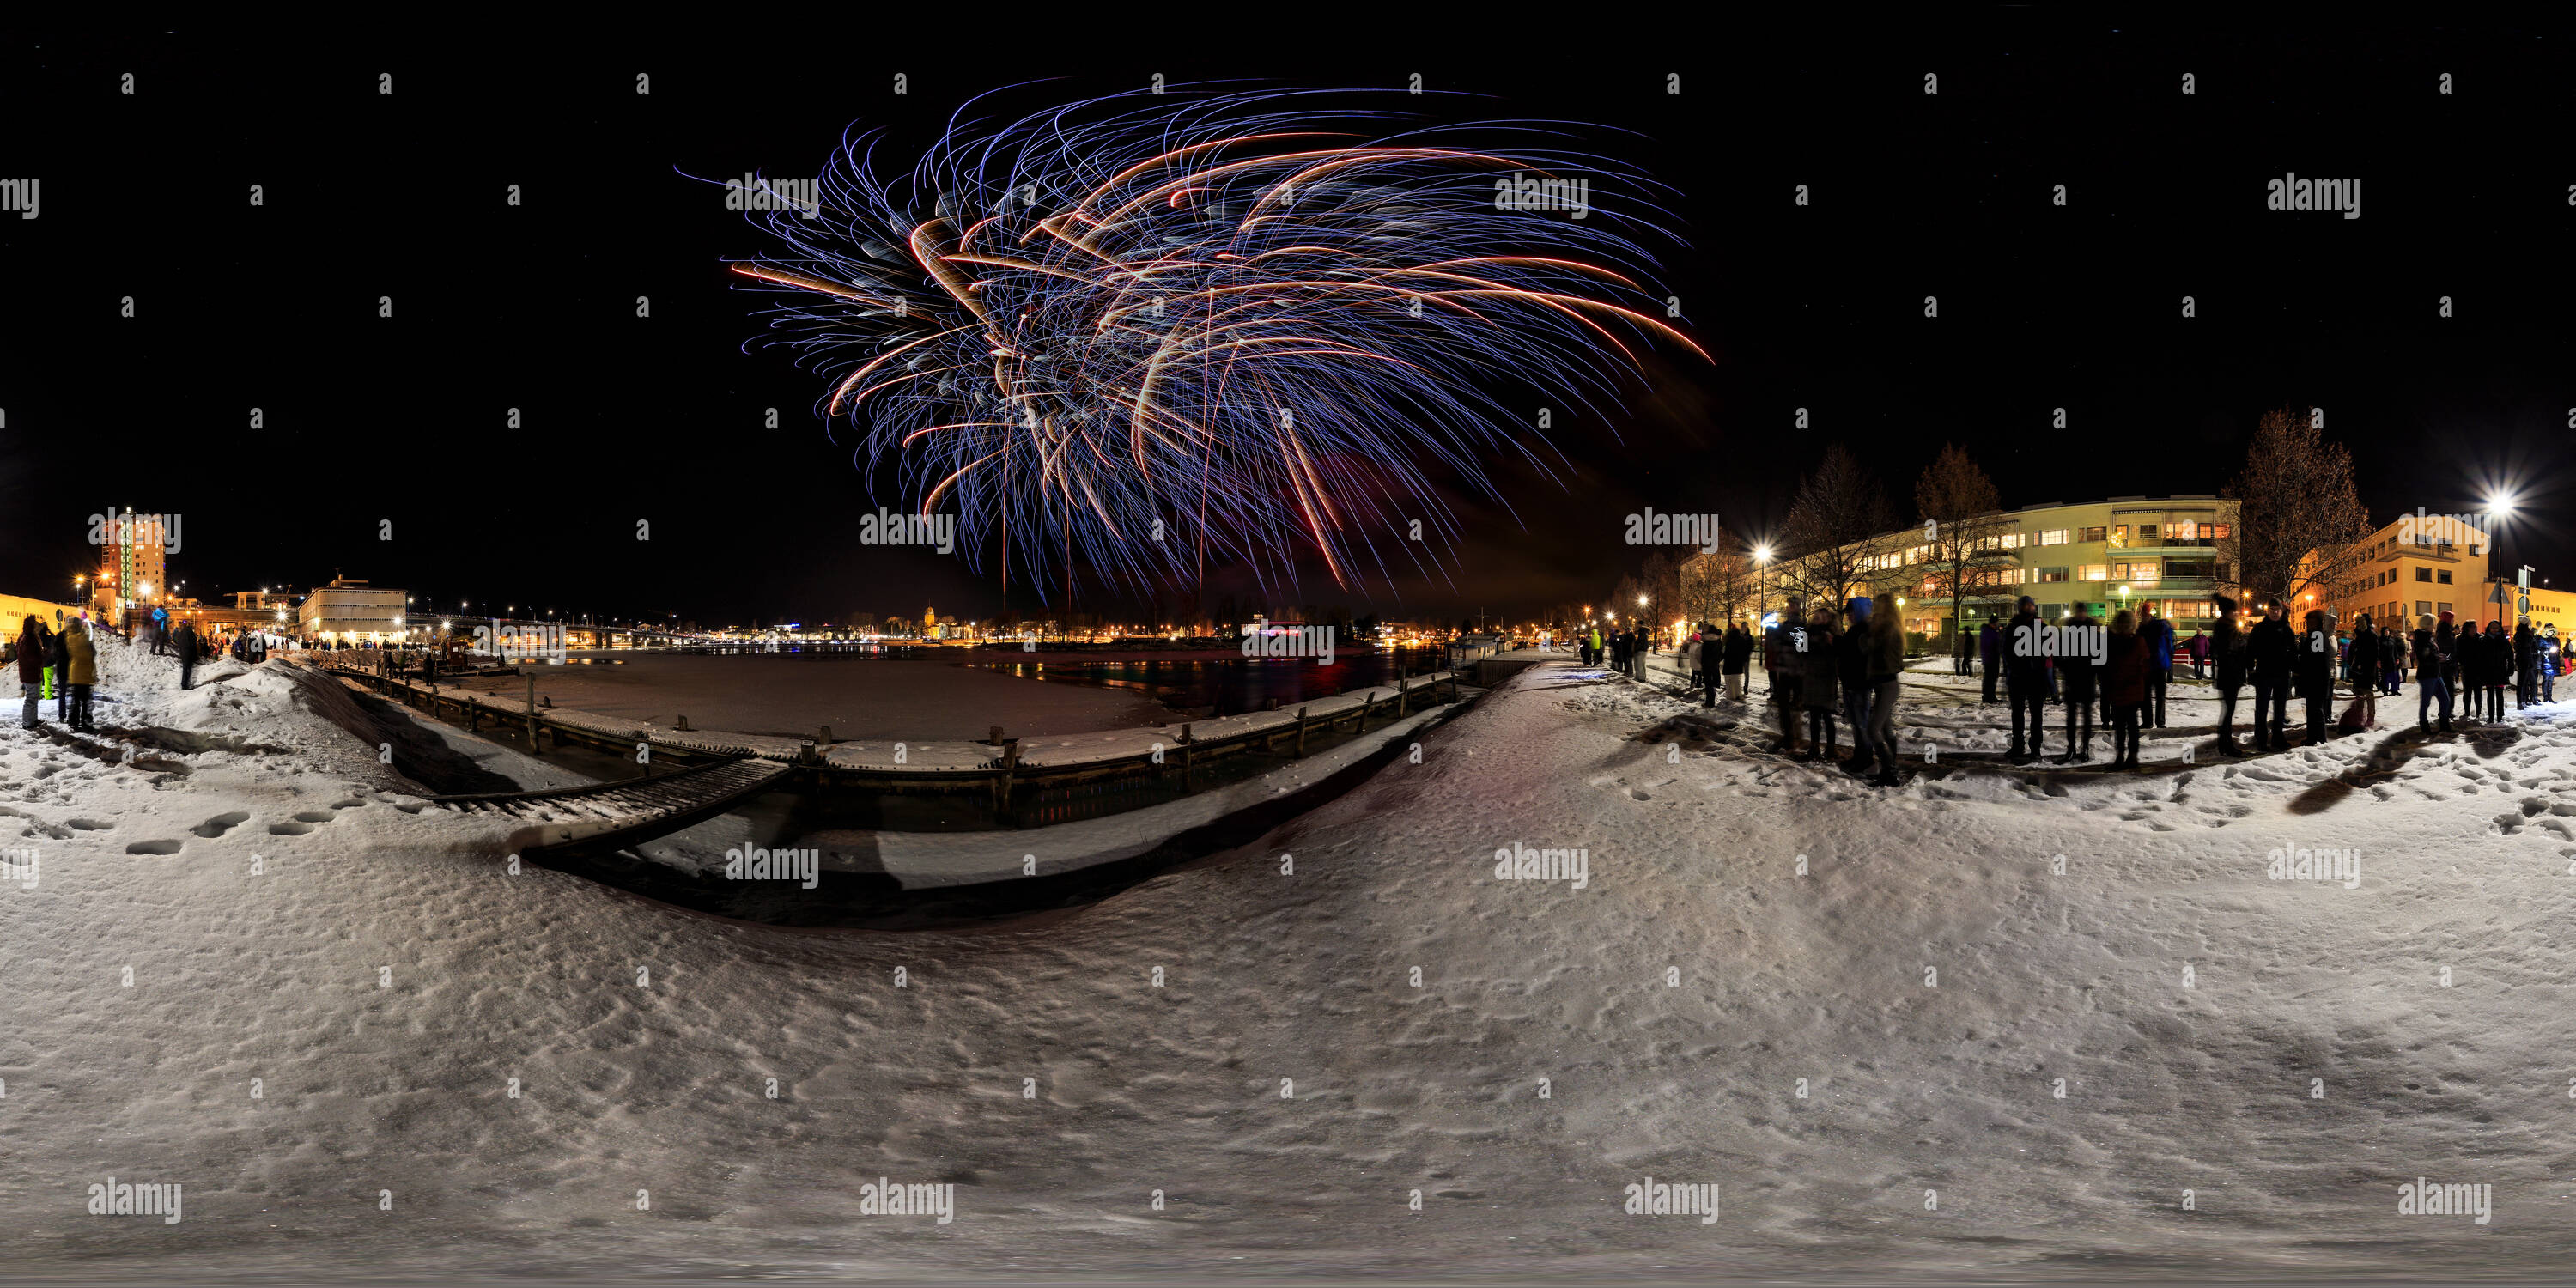 360 degree panoramic view of Joensuu New Year 2017